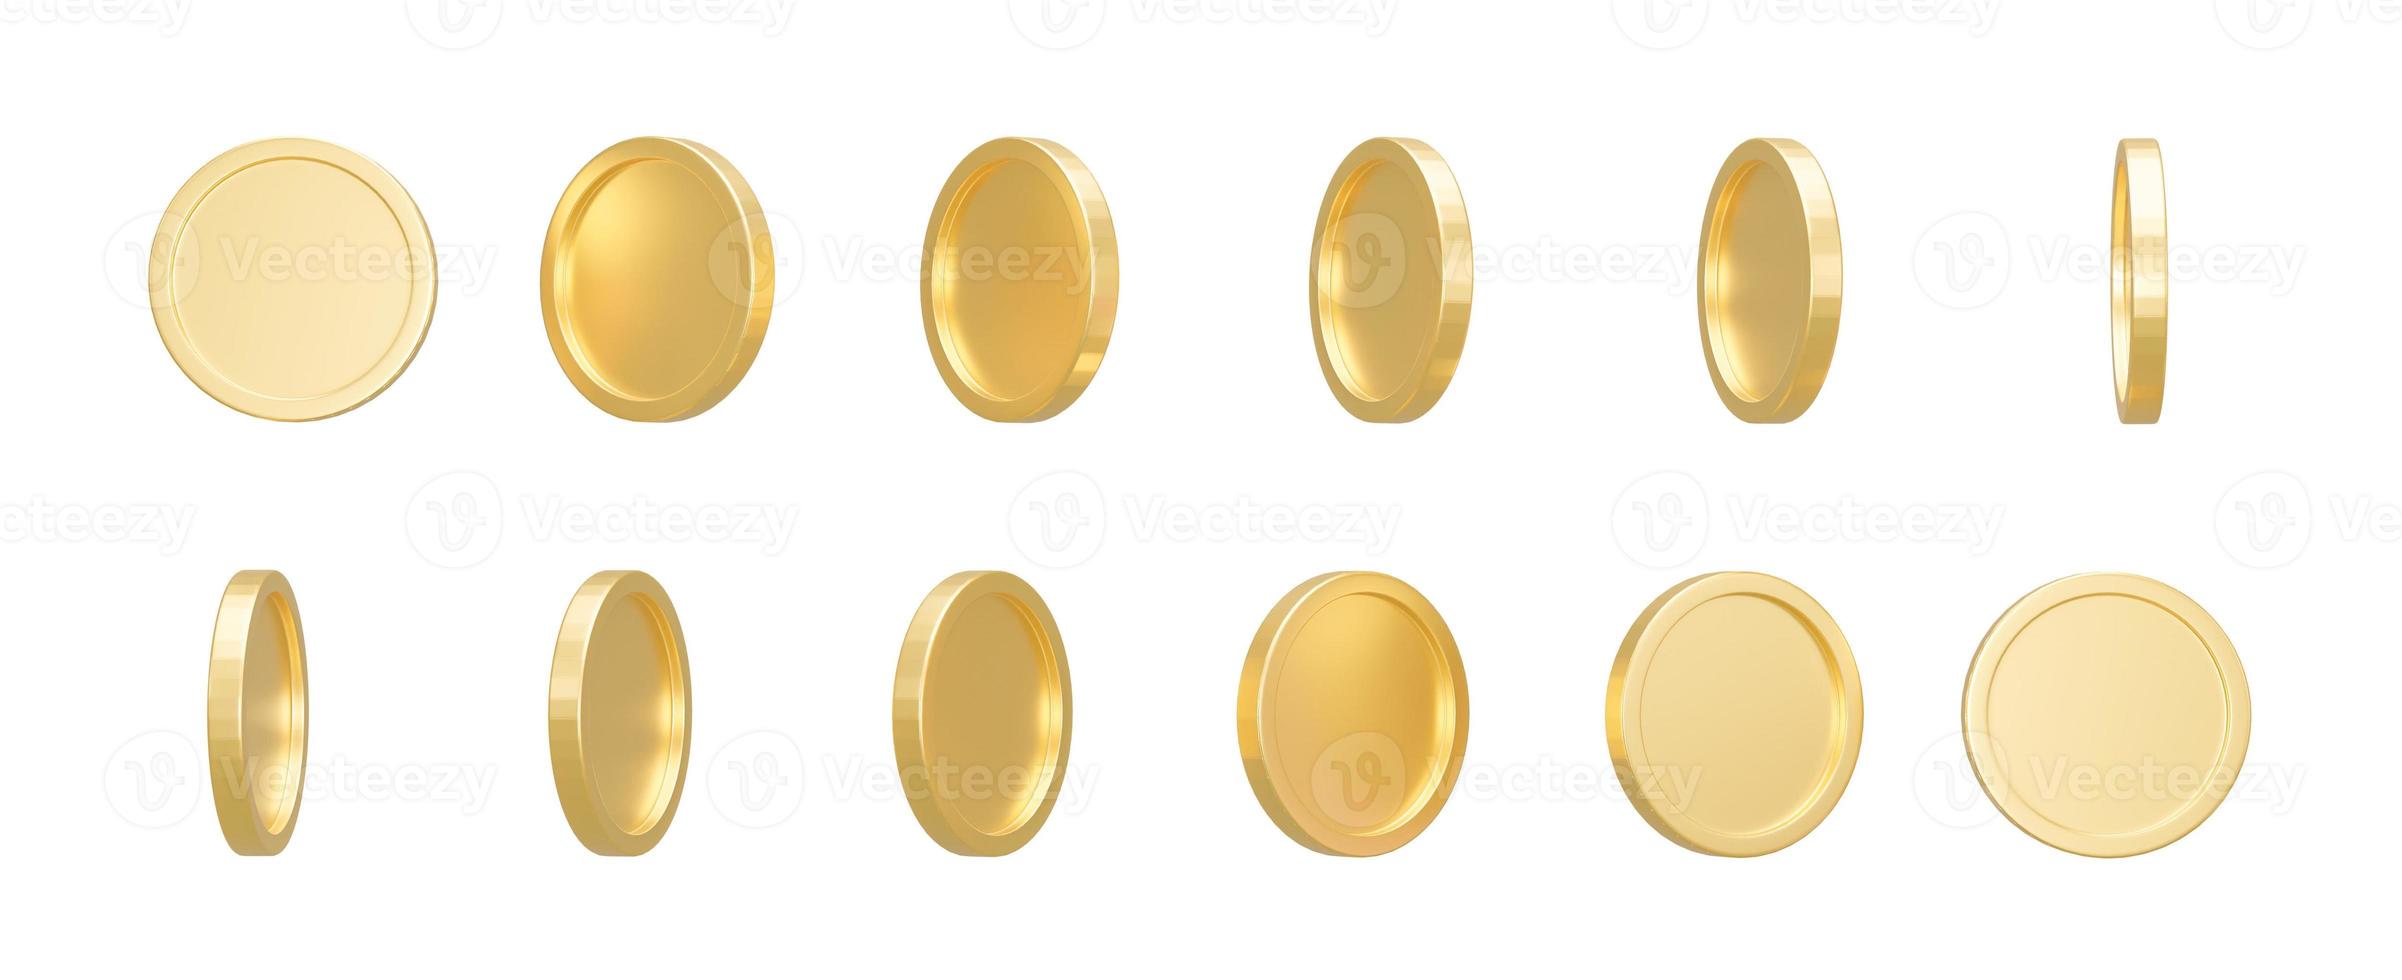 conjunto de monedas de oro en forma diferente aislado sobre fondo blanco. ilustración 3d representación 3d foto